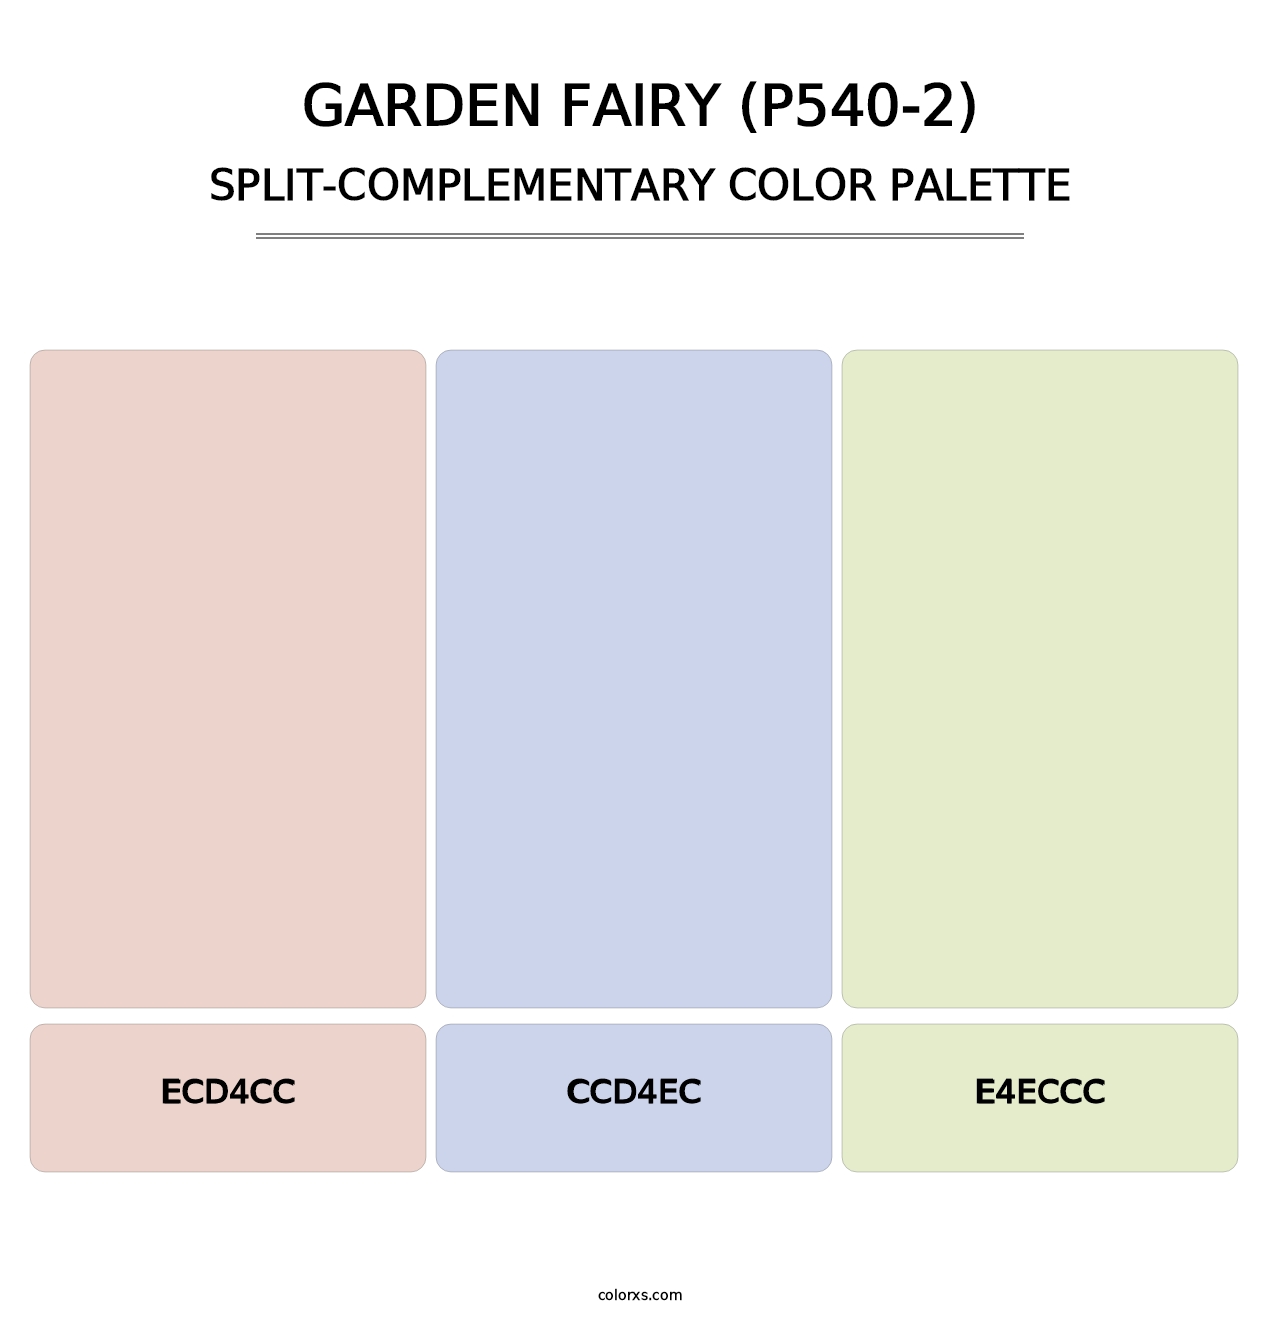 Garden Fairy (P540-2) - Split-Complementary Color Palette